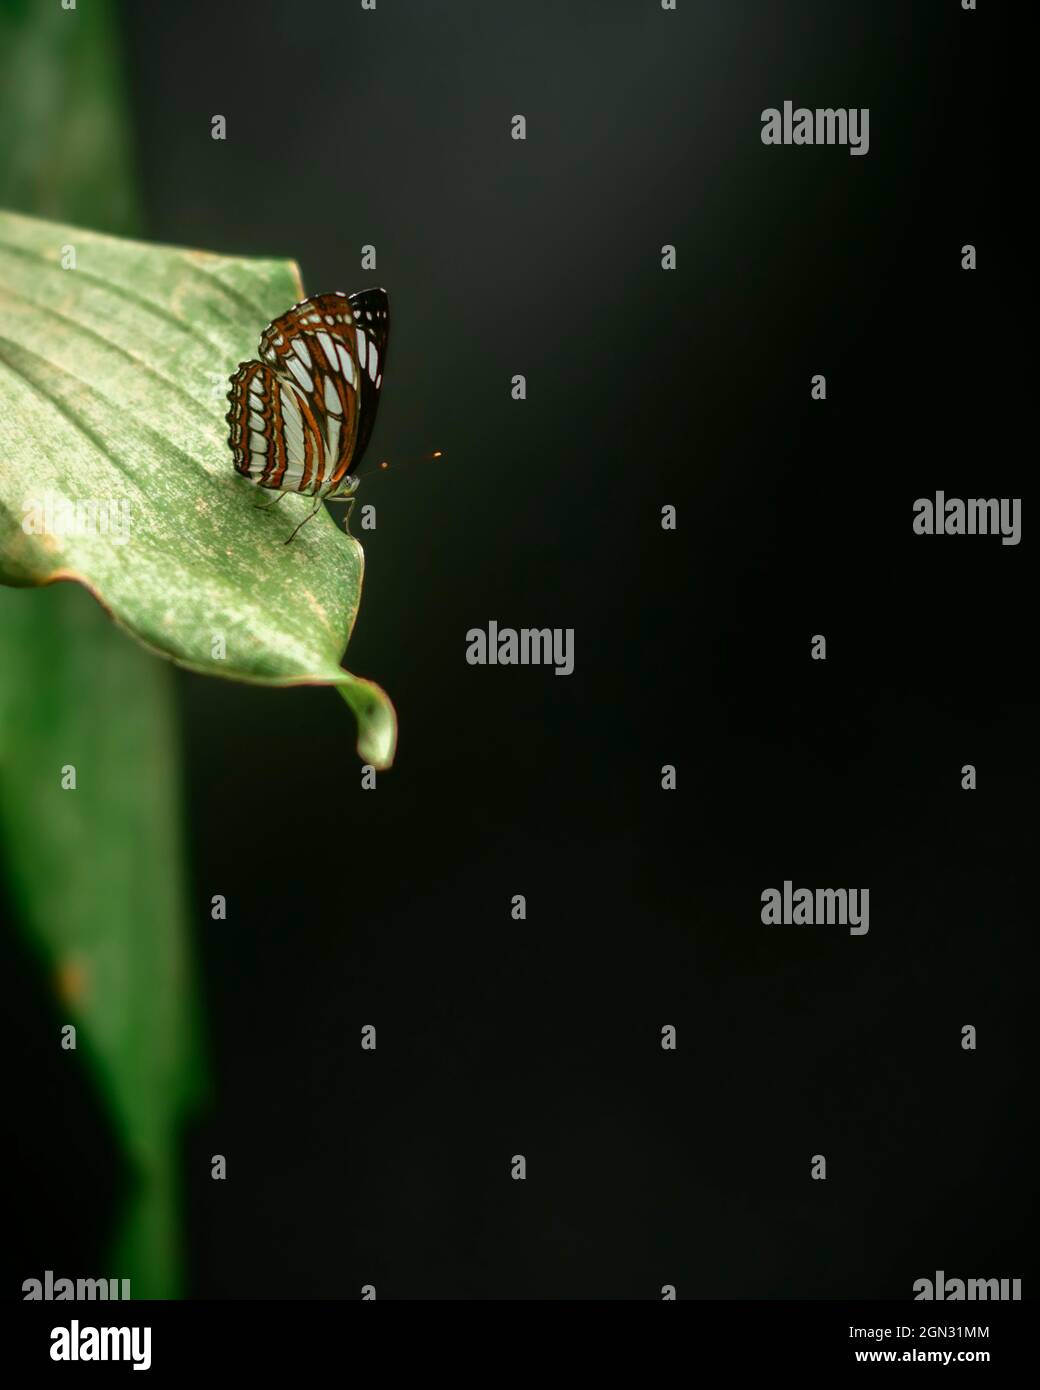 Bella farfalla Ceylon Tiger poggiare sul bordo di una foglia verde, ambiente naturale scuro con illuminazione soffusa, morbido sfondo bokeh, e spazio copia f Foto Stock